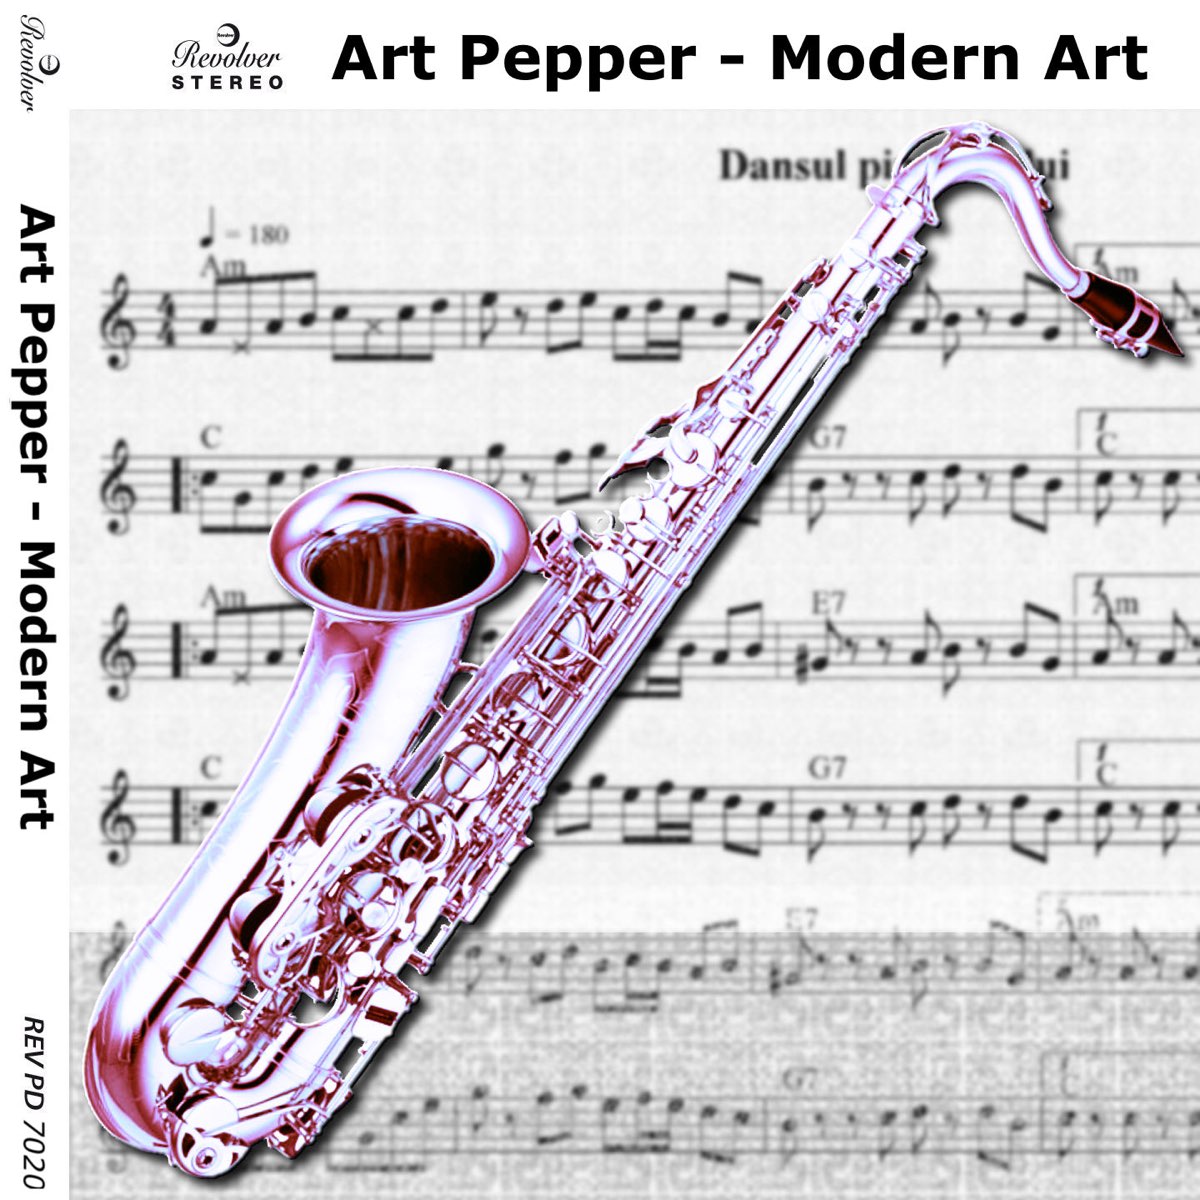 Art pepper